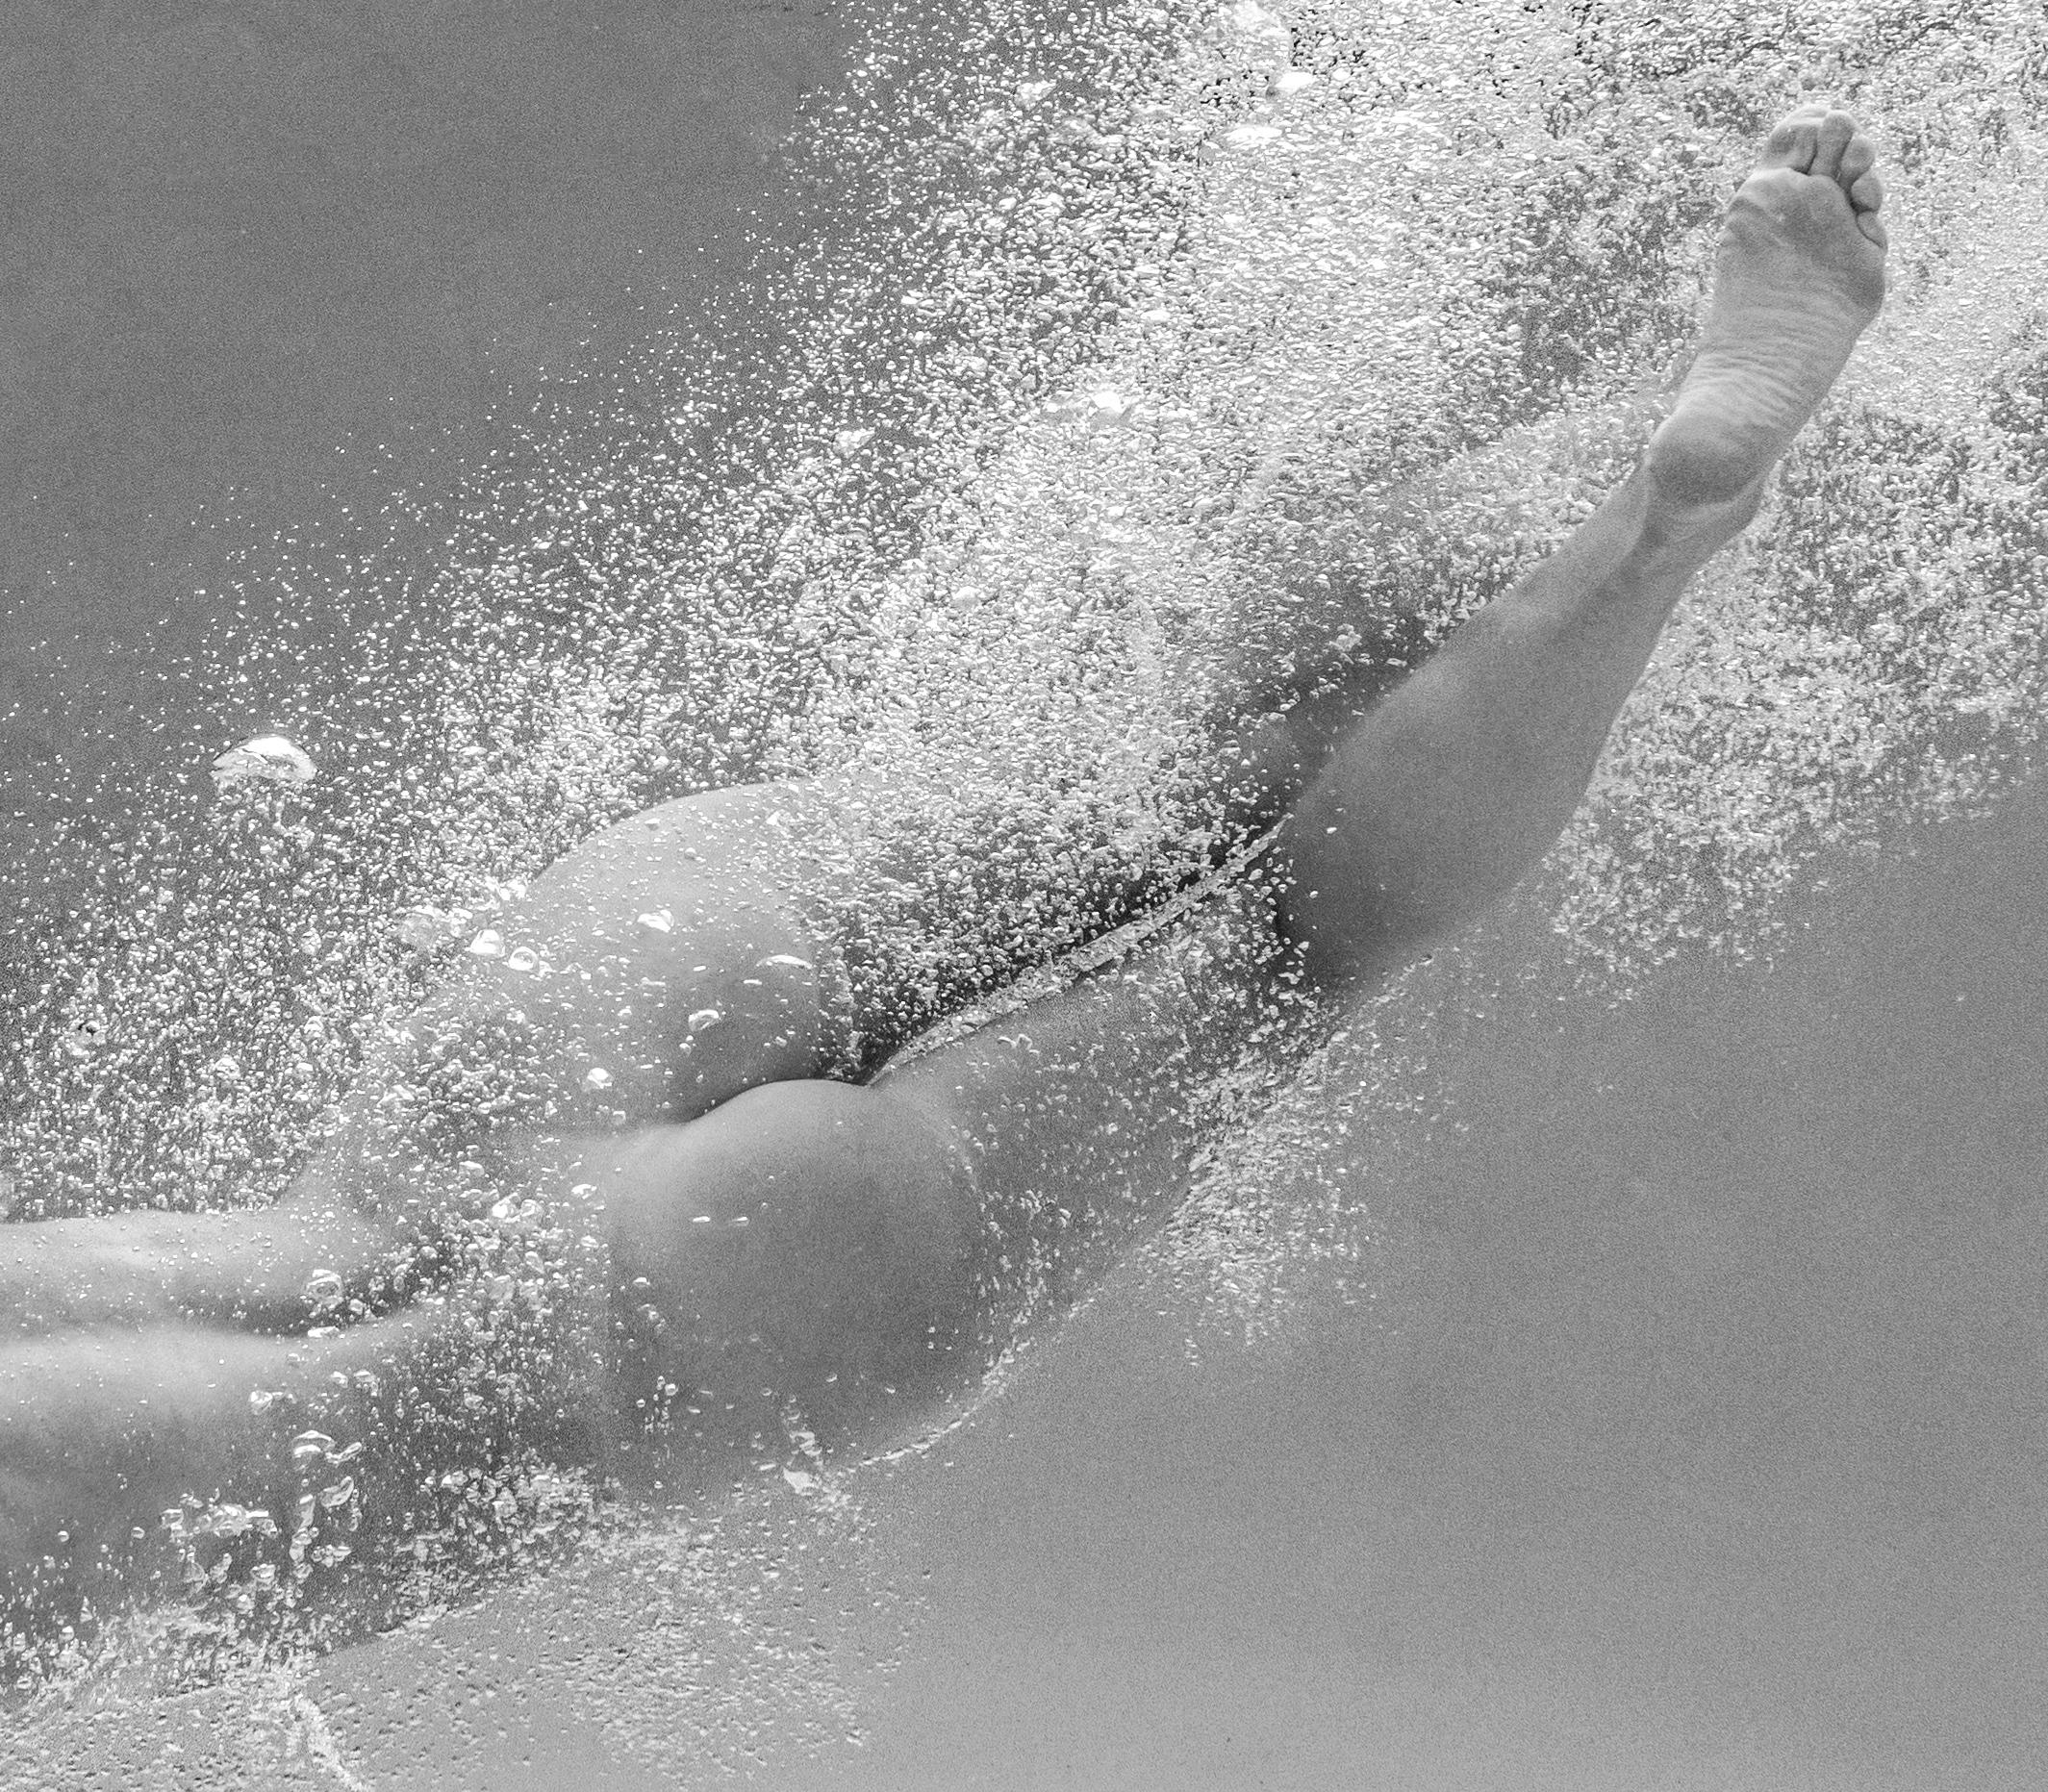 Eine Unterwasser-Schwarz-Weiß-Aufnahme einer jungen nackten Frau in einem Schwimmbecken.  

Original-Pigmentdruck in Galerie-Qualität, archiviert  vom Autor signiert. 
Limitierte Auflage von 24 Stück
Papierformat: 18 x 24